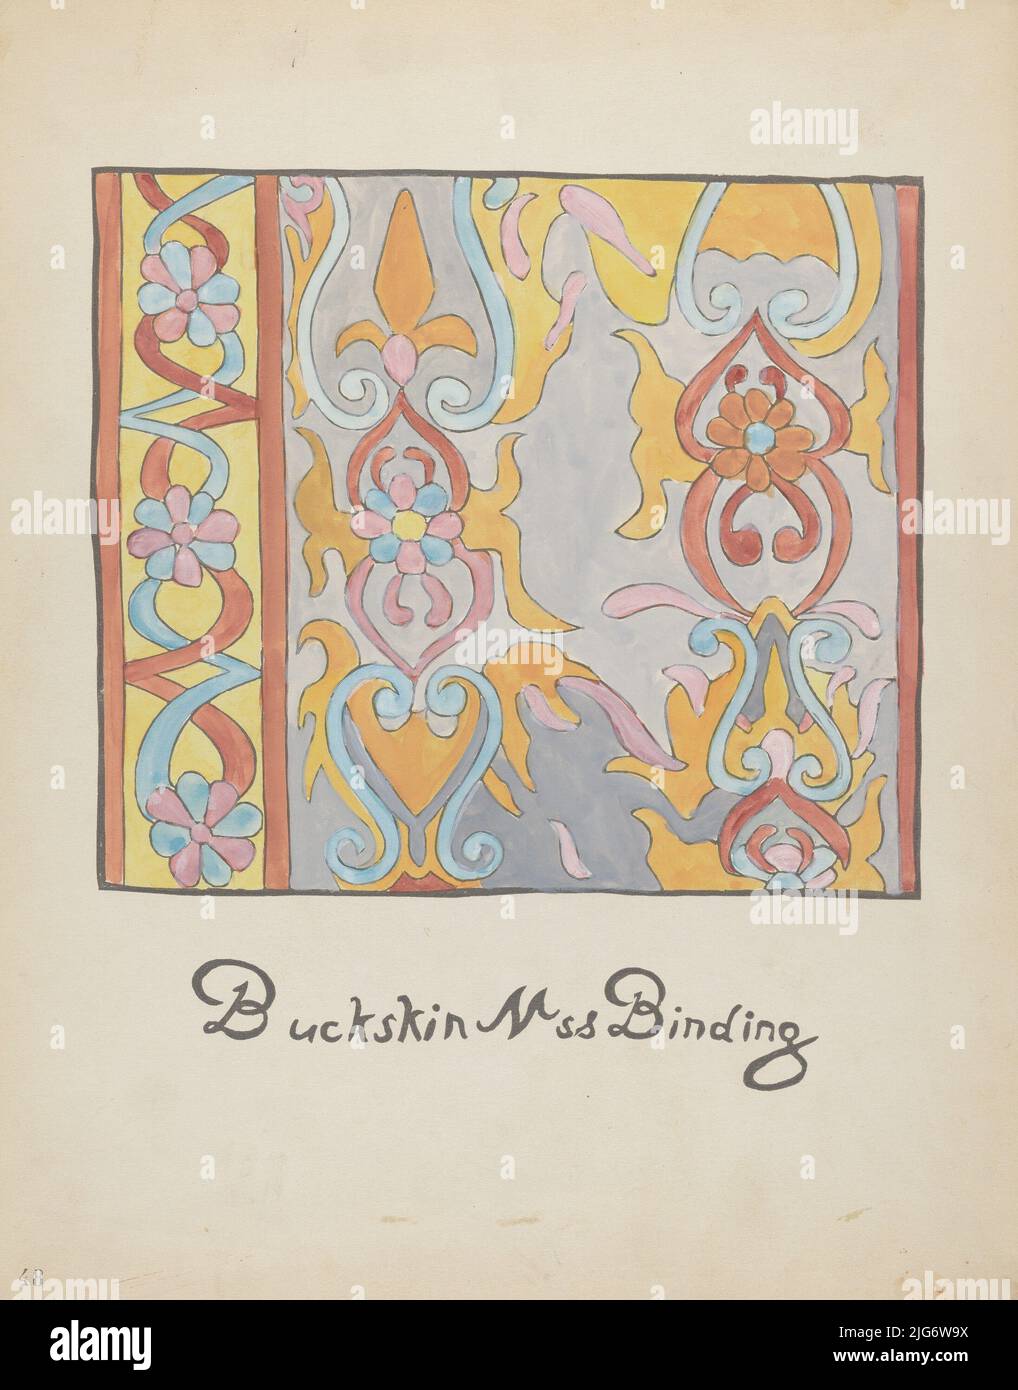 Placa 48: Diseño de Buckskin: Del Portafolio “Diseños coloniales españoles de Nuevo México”, 1935/1942. Foto de stock